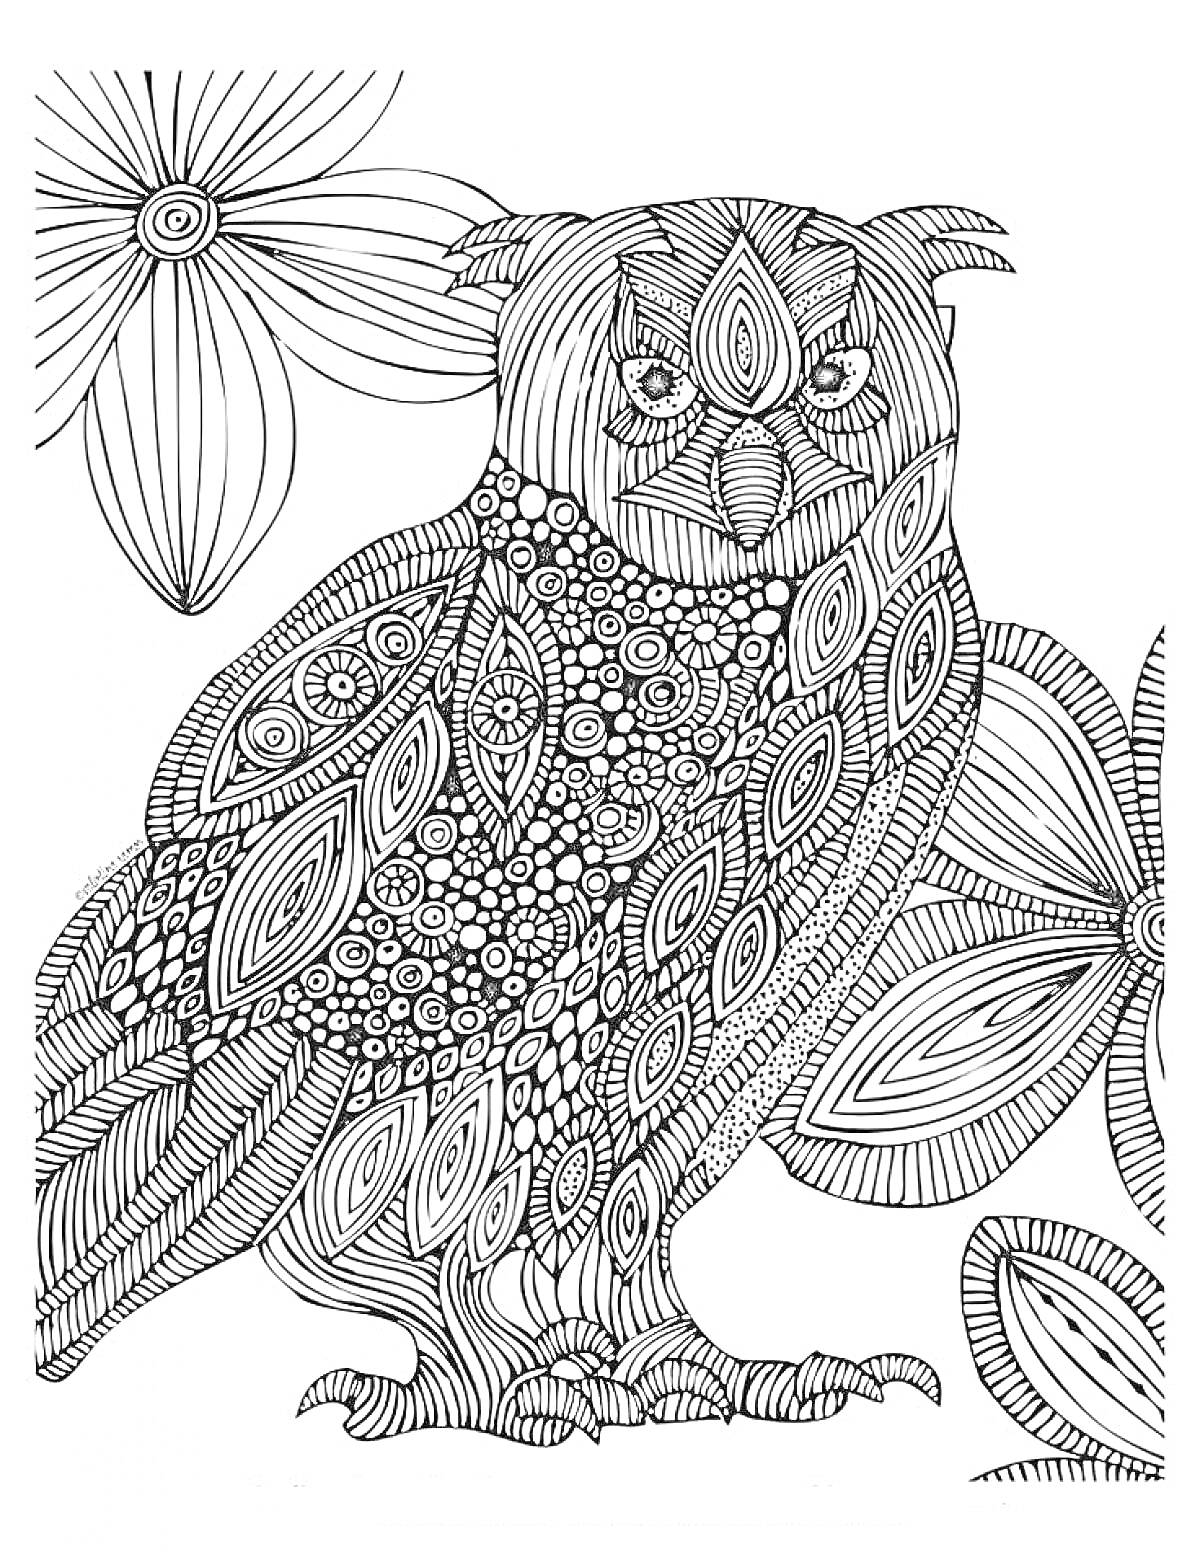 Раскраска Антистресс раскраска с совой и цветами, сова с узорами